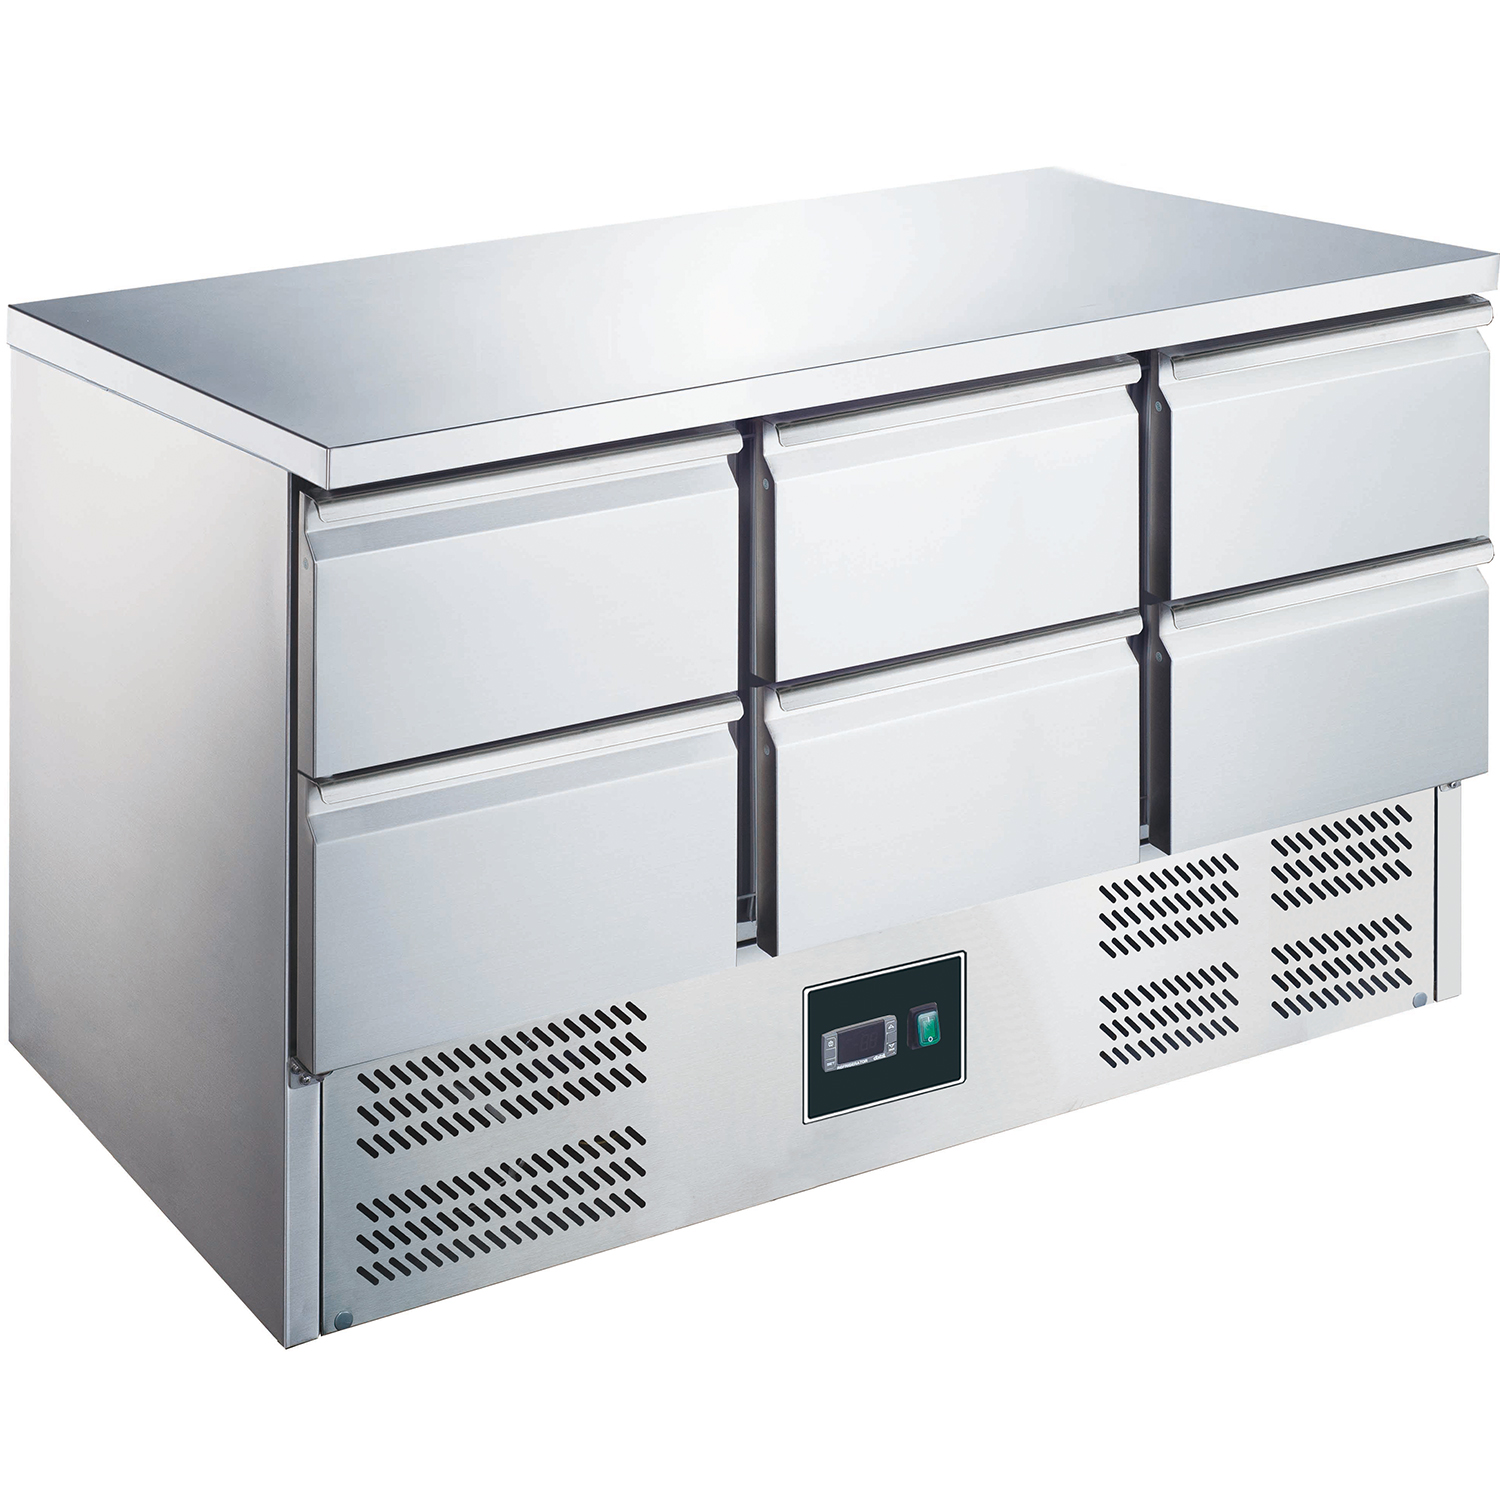 Table réfrigérée à 6 tiroirs, modèle ES 903 S/S TOP 0/6